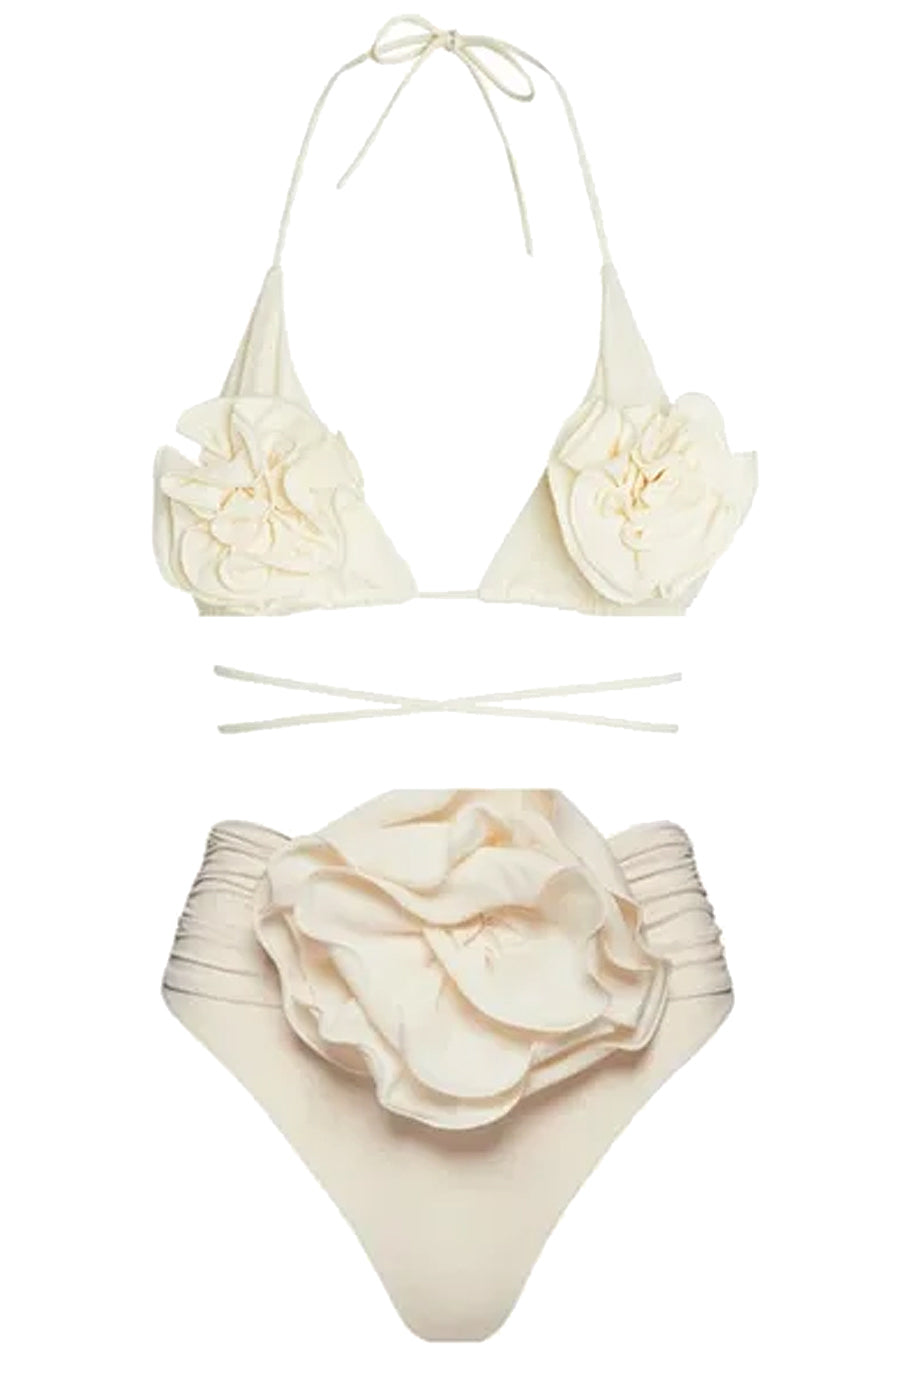 Rosita Μπικίνι Μαγιό με Λουλούδια | Γυναικεία Μαγιό - Swimwear Bikini | Rosita Triangle Flower Bikini